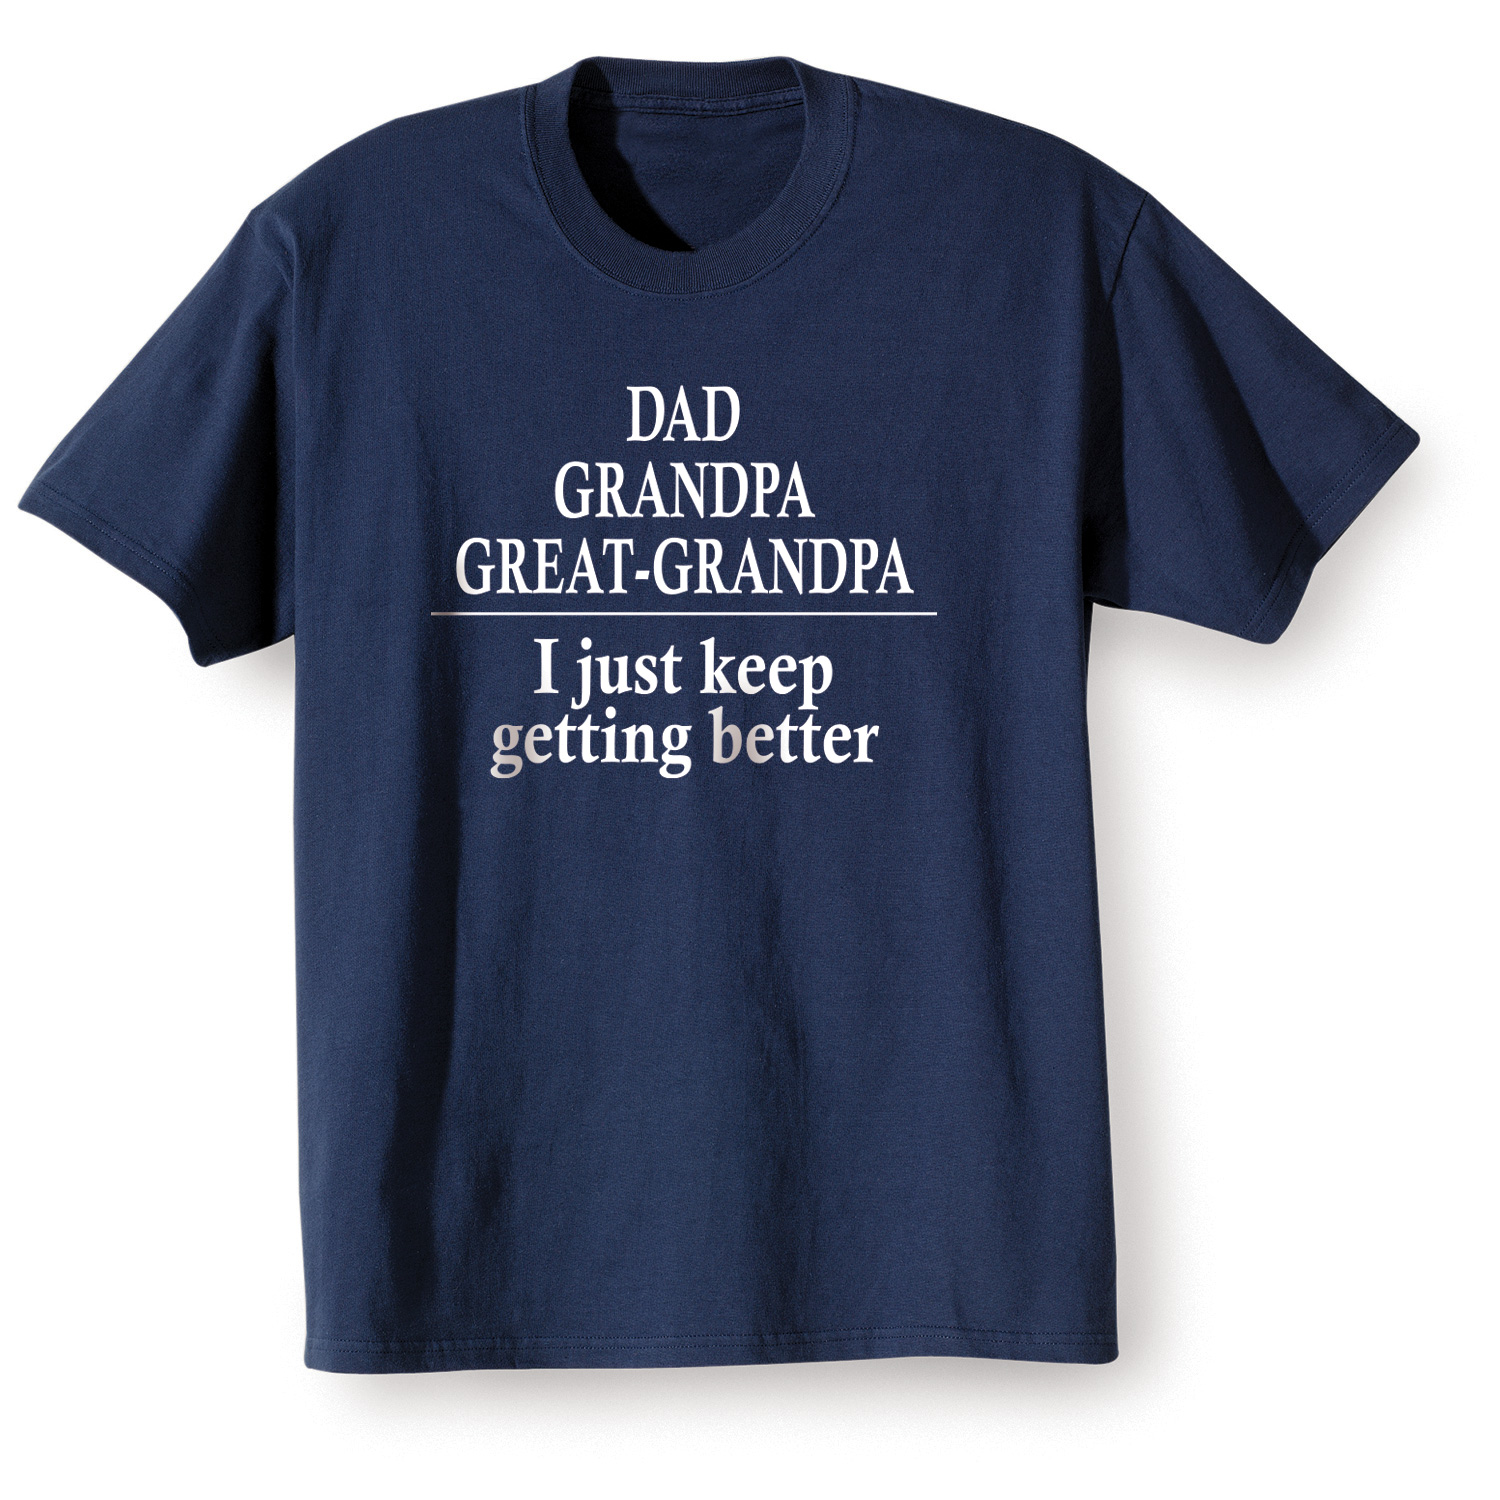 Dad, Grandpa, Great-Grandpa - T-Shirt - 2x